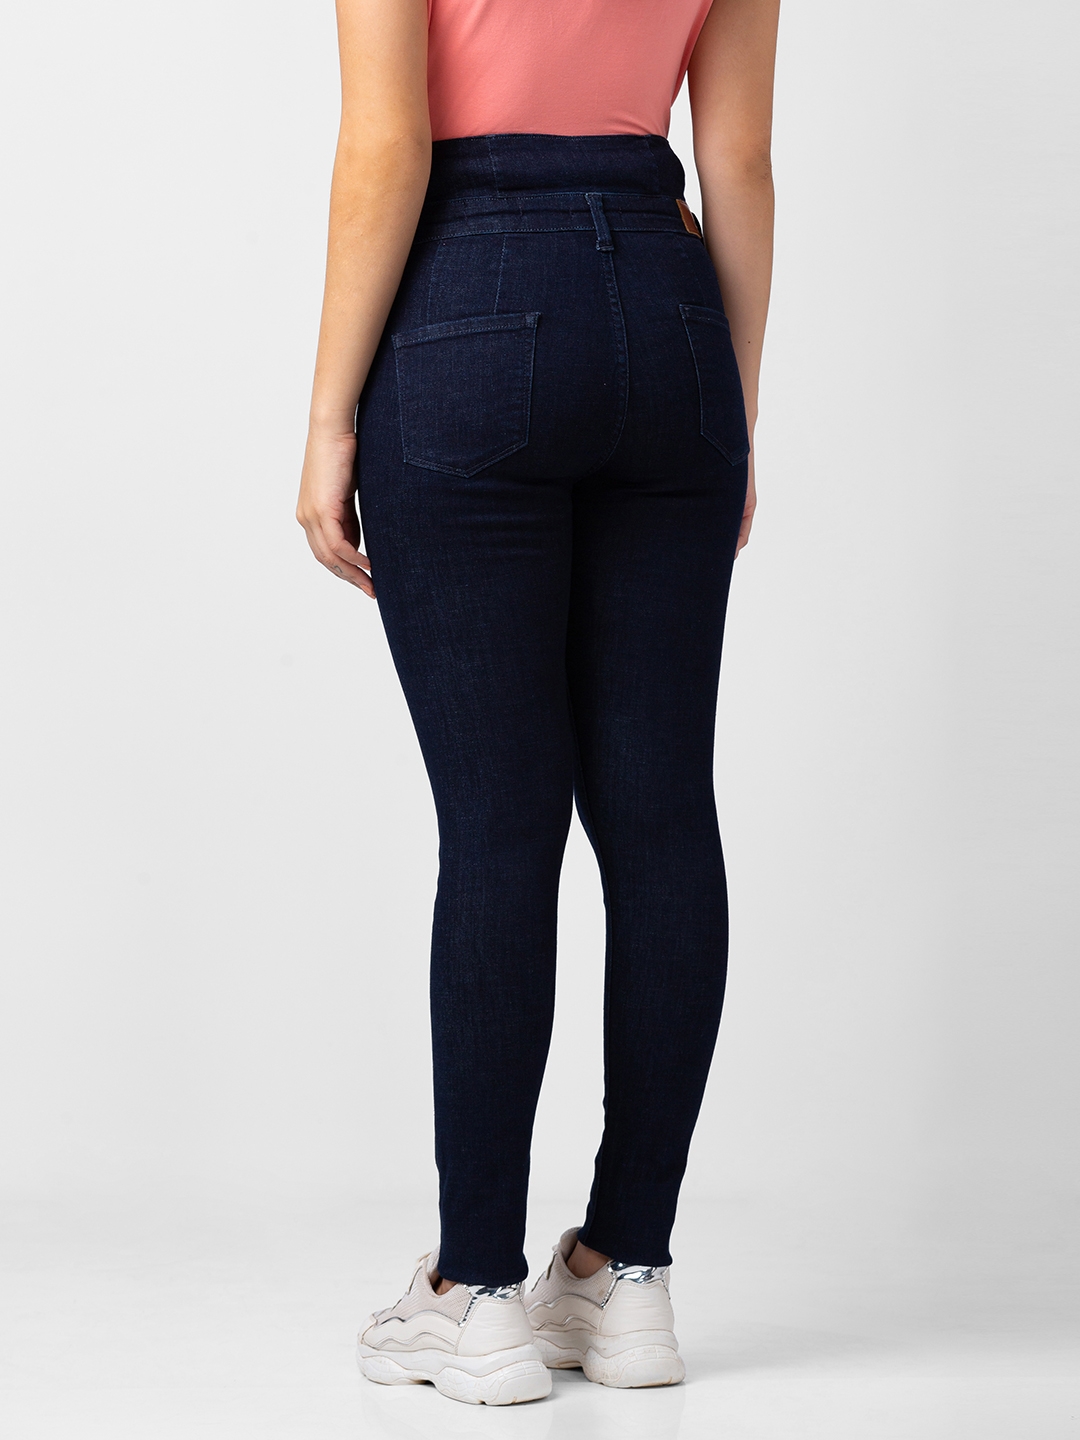 spykar | Women's Blue Lycra Solid Jeans 2